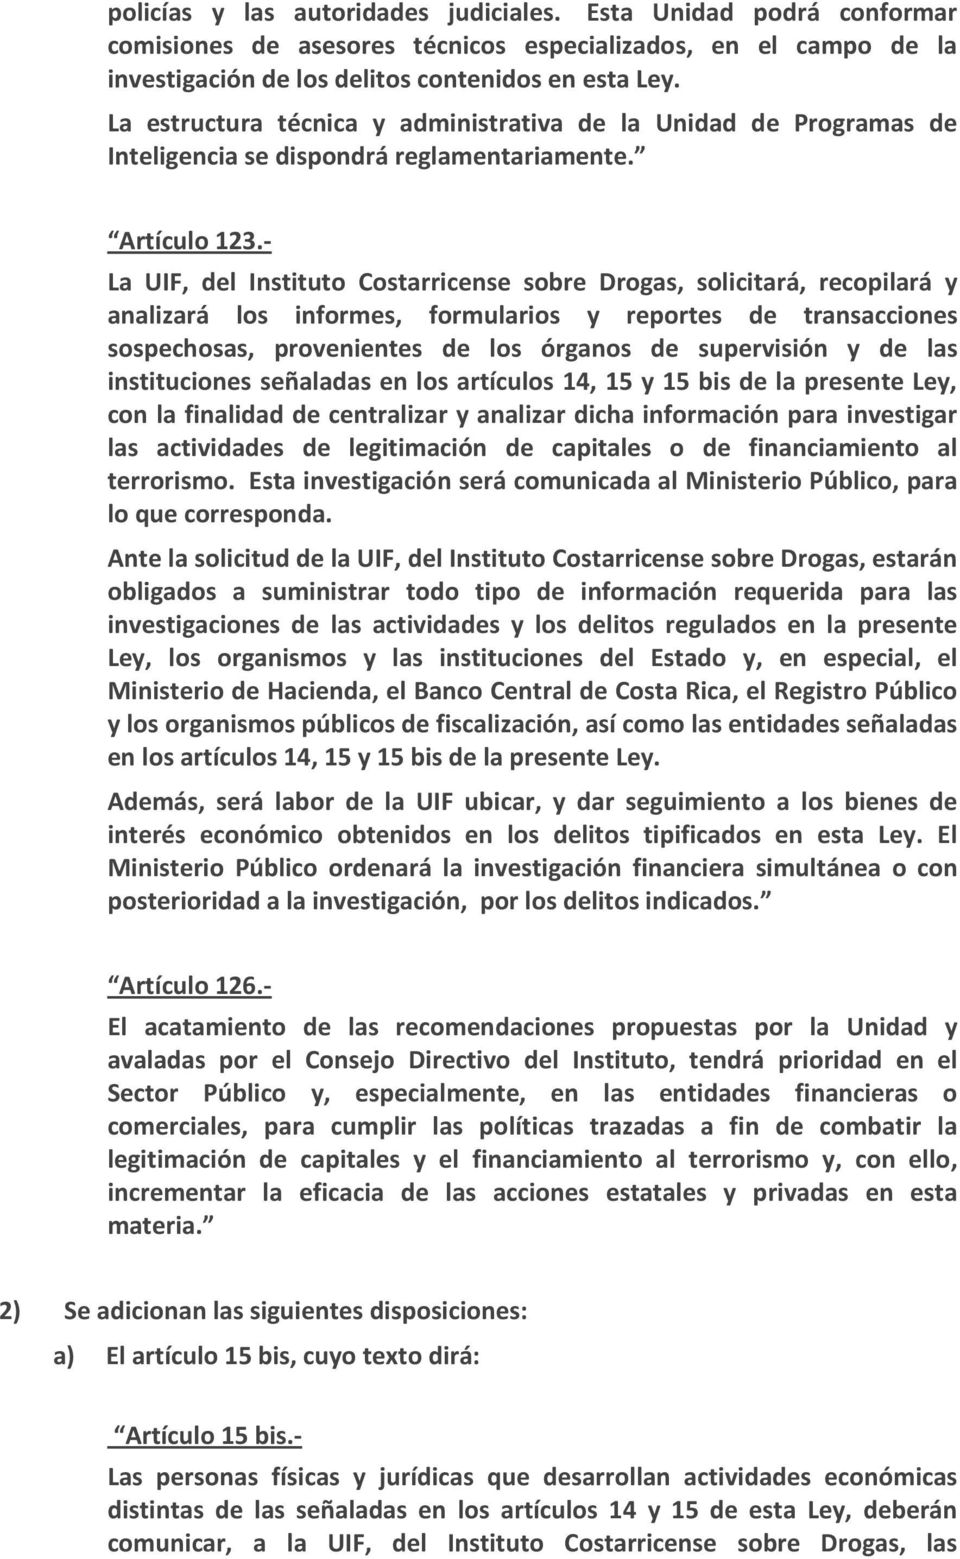 - La UIF, del Instituto Costarricense sobre Drogas, solicitará, recopilará y analizará los informes, formularios y reportes de transacciones sospechosas, provenientes de los órganos de supervisión y